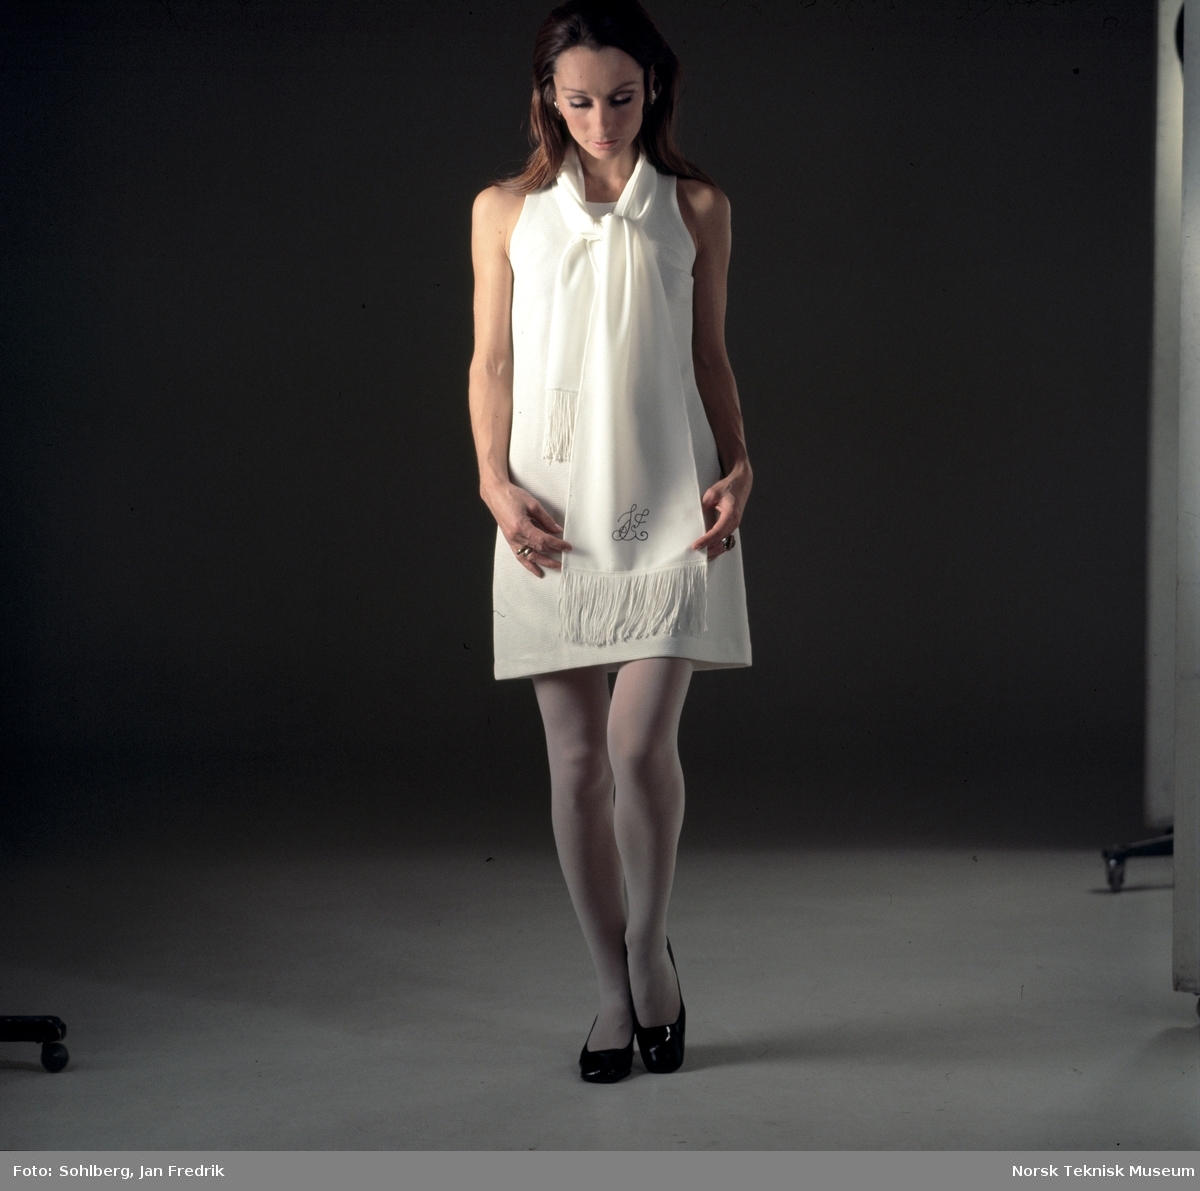 Tidlig norsk motefotografi. Kvinnelig modell med kort, hvit kjole og skjerf med monogram.